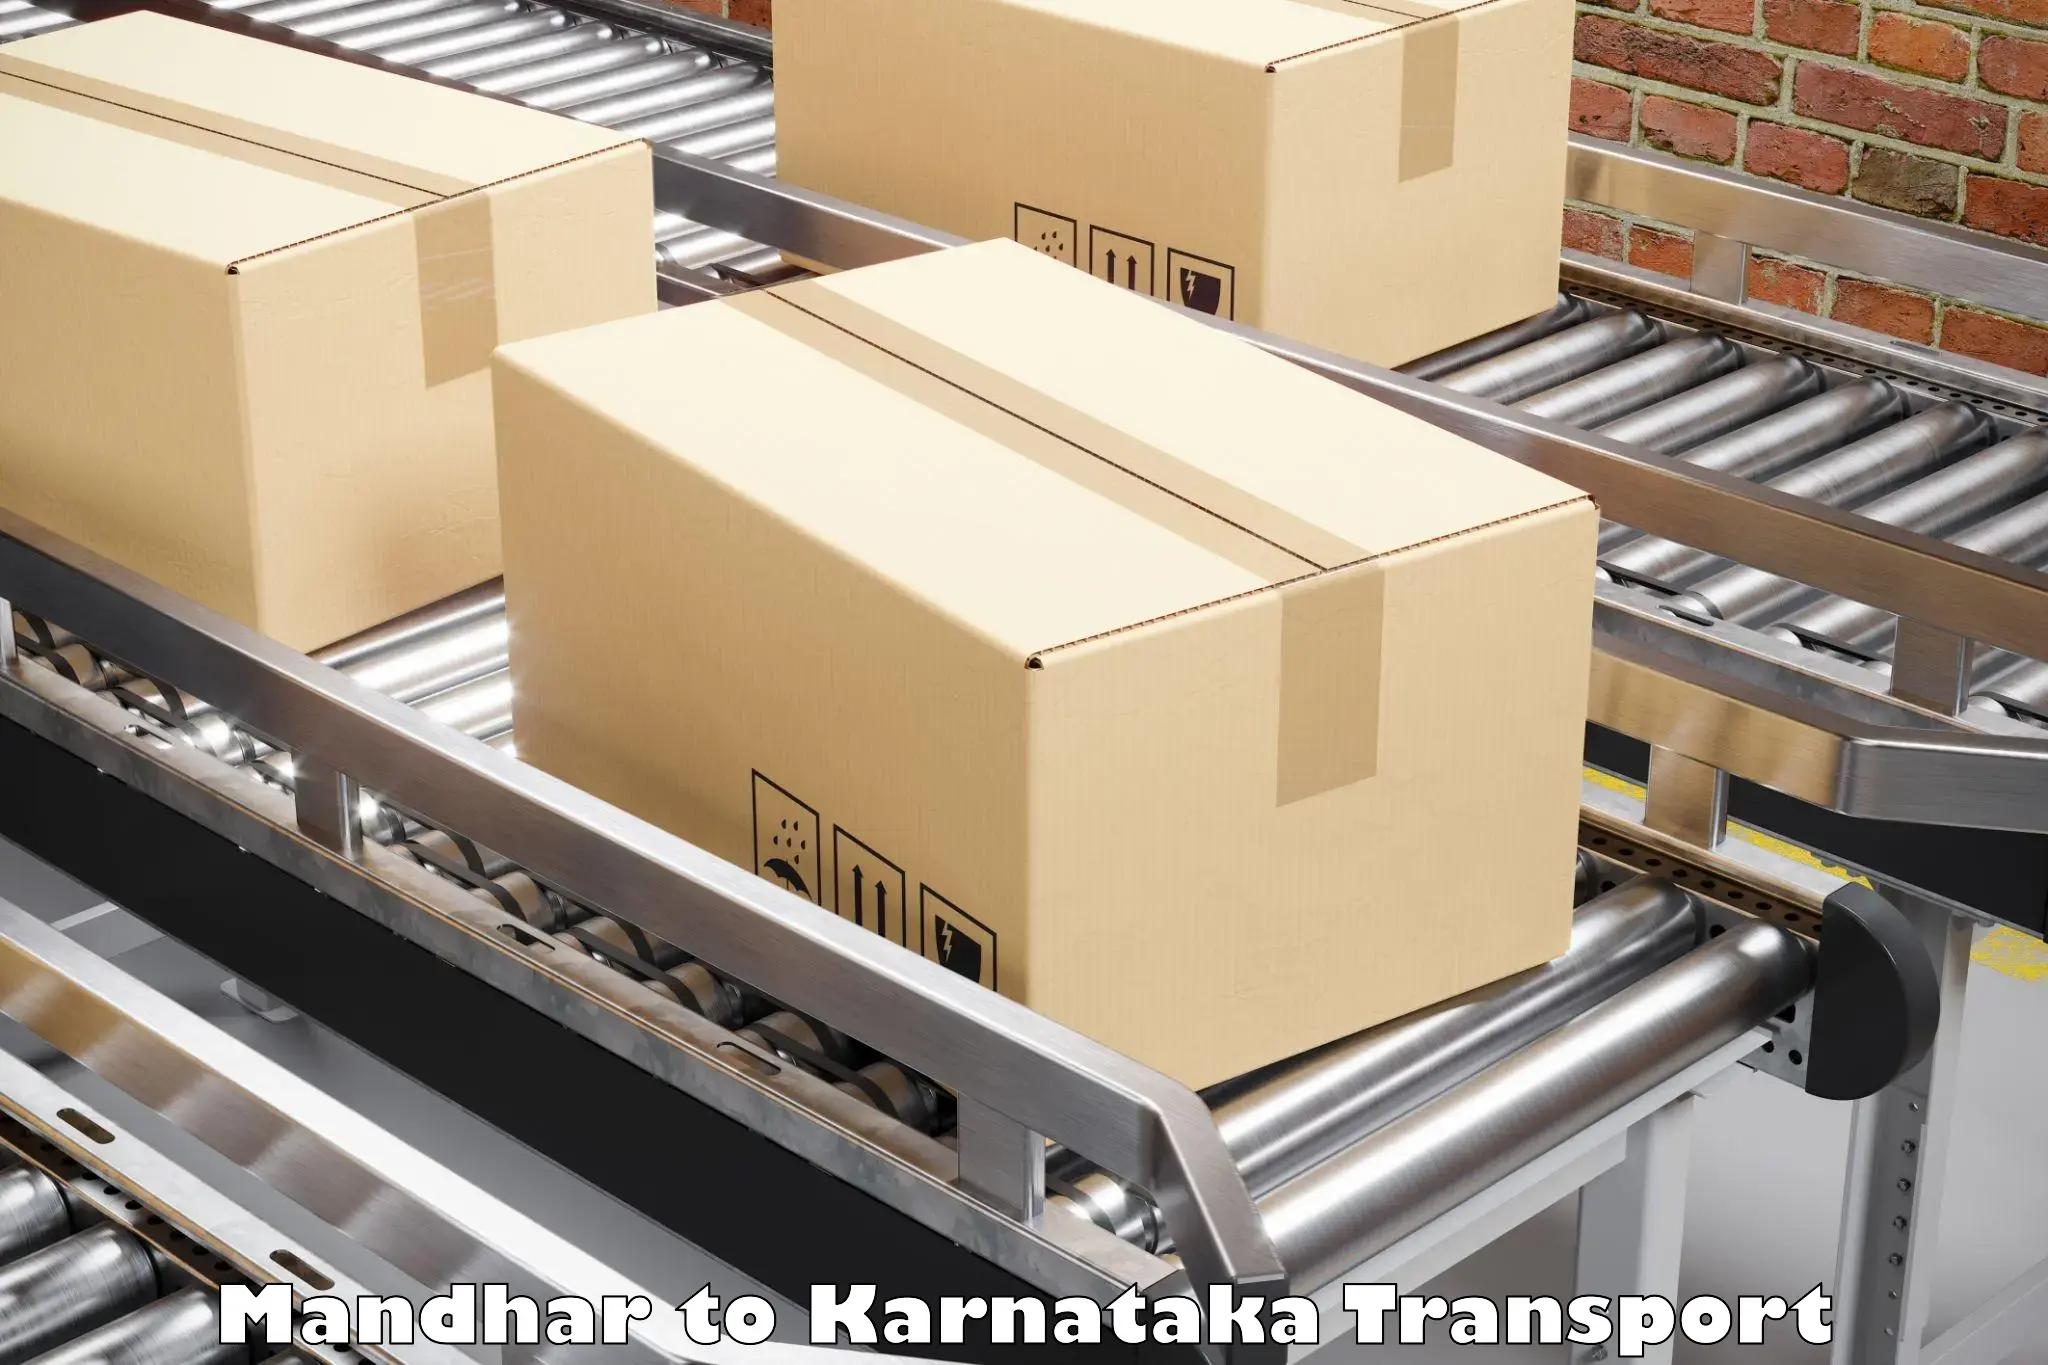 Furniture transport service Mandhar to Kalaburagi